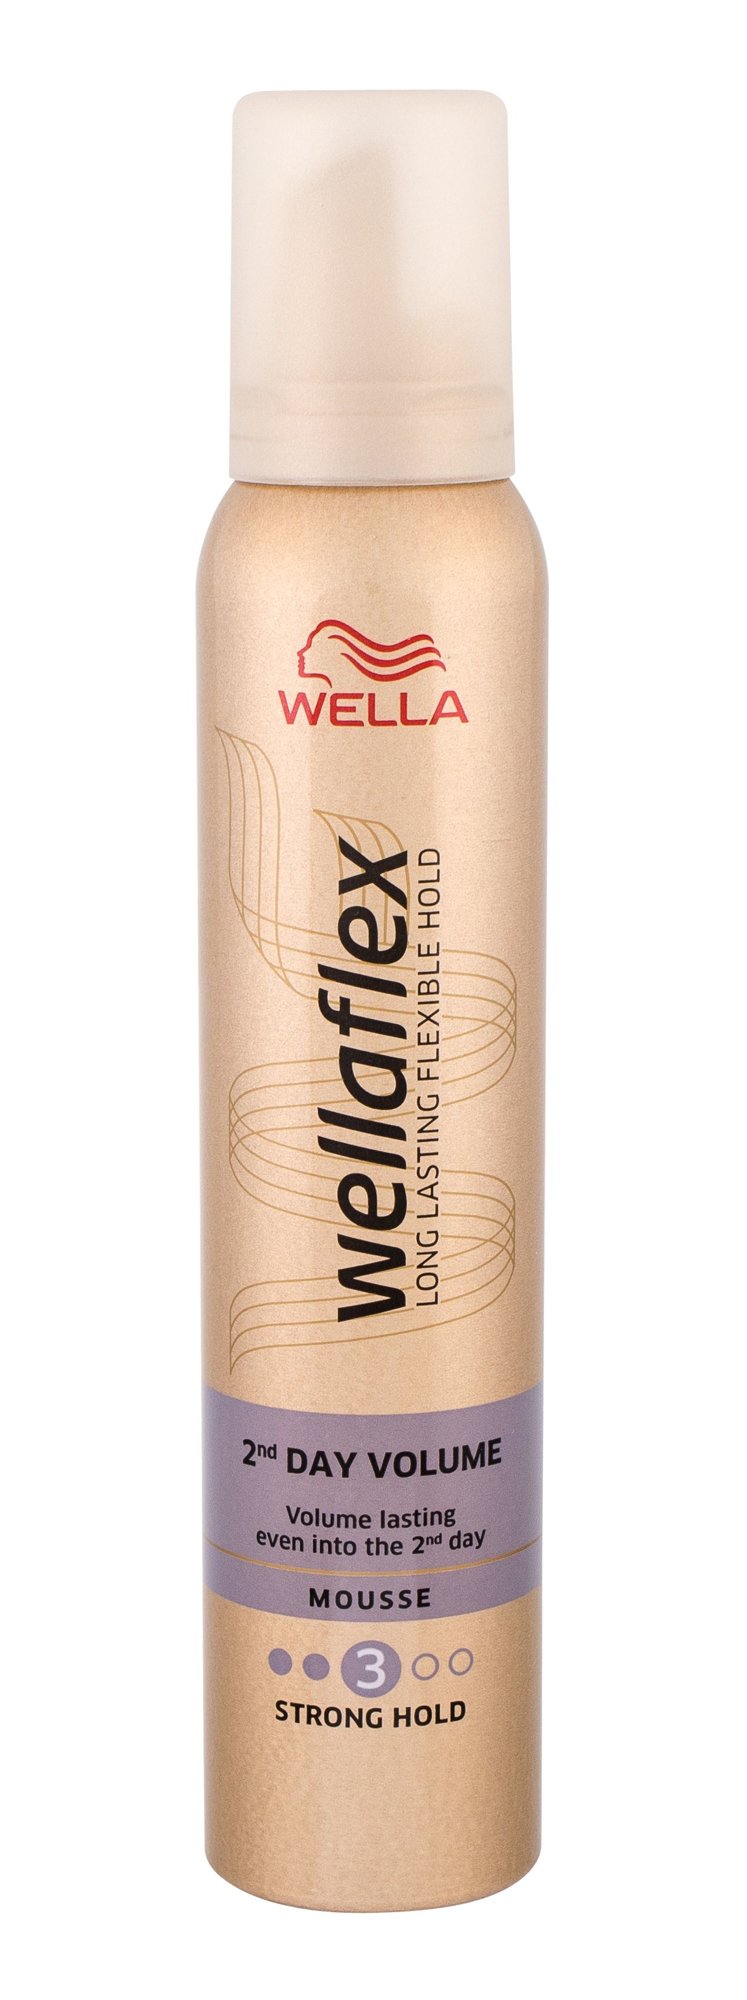 Wella Wellaflex 2nd Day Volume plaukų putos